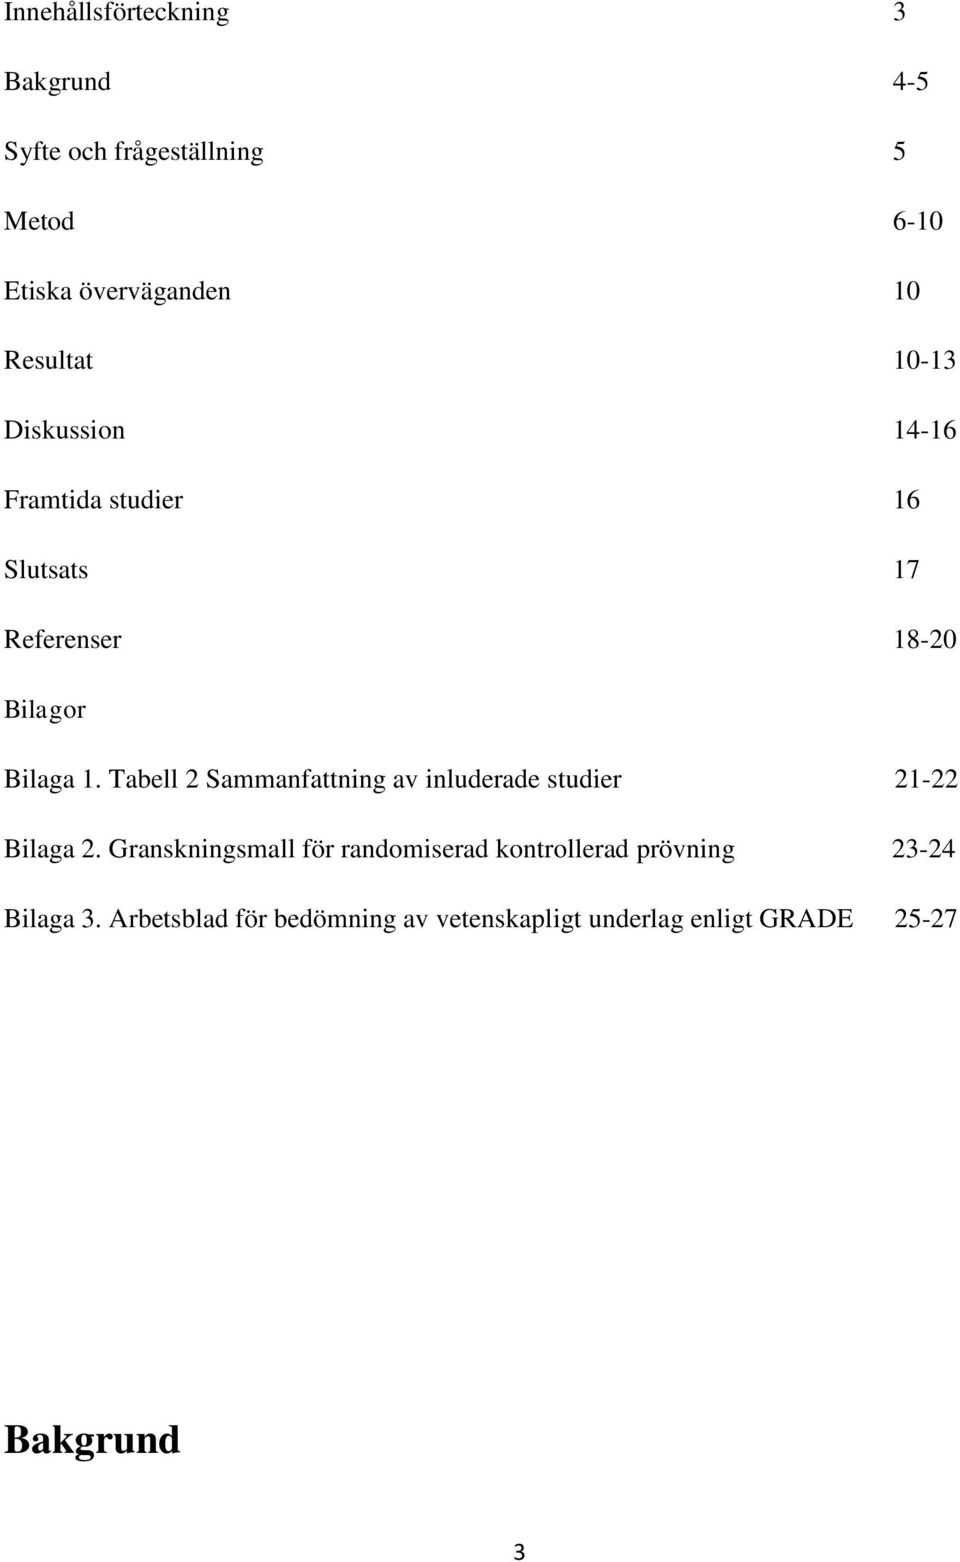 Tabell 2 Sammanfattning av inluderade studier 21-22 Bilaga 2.